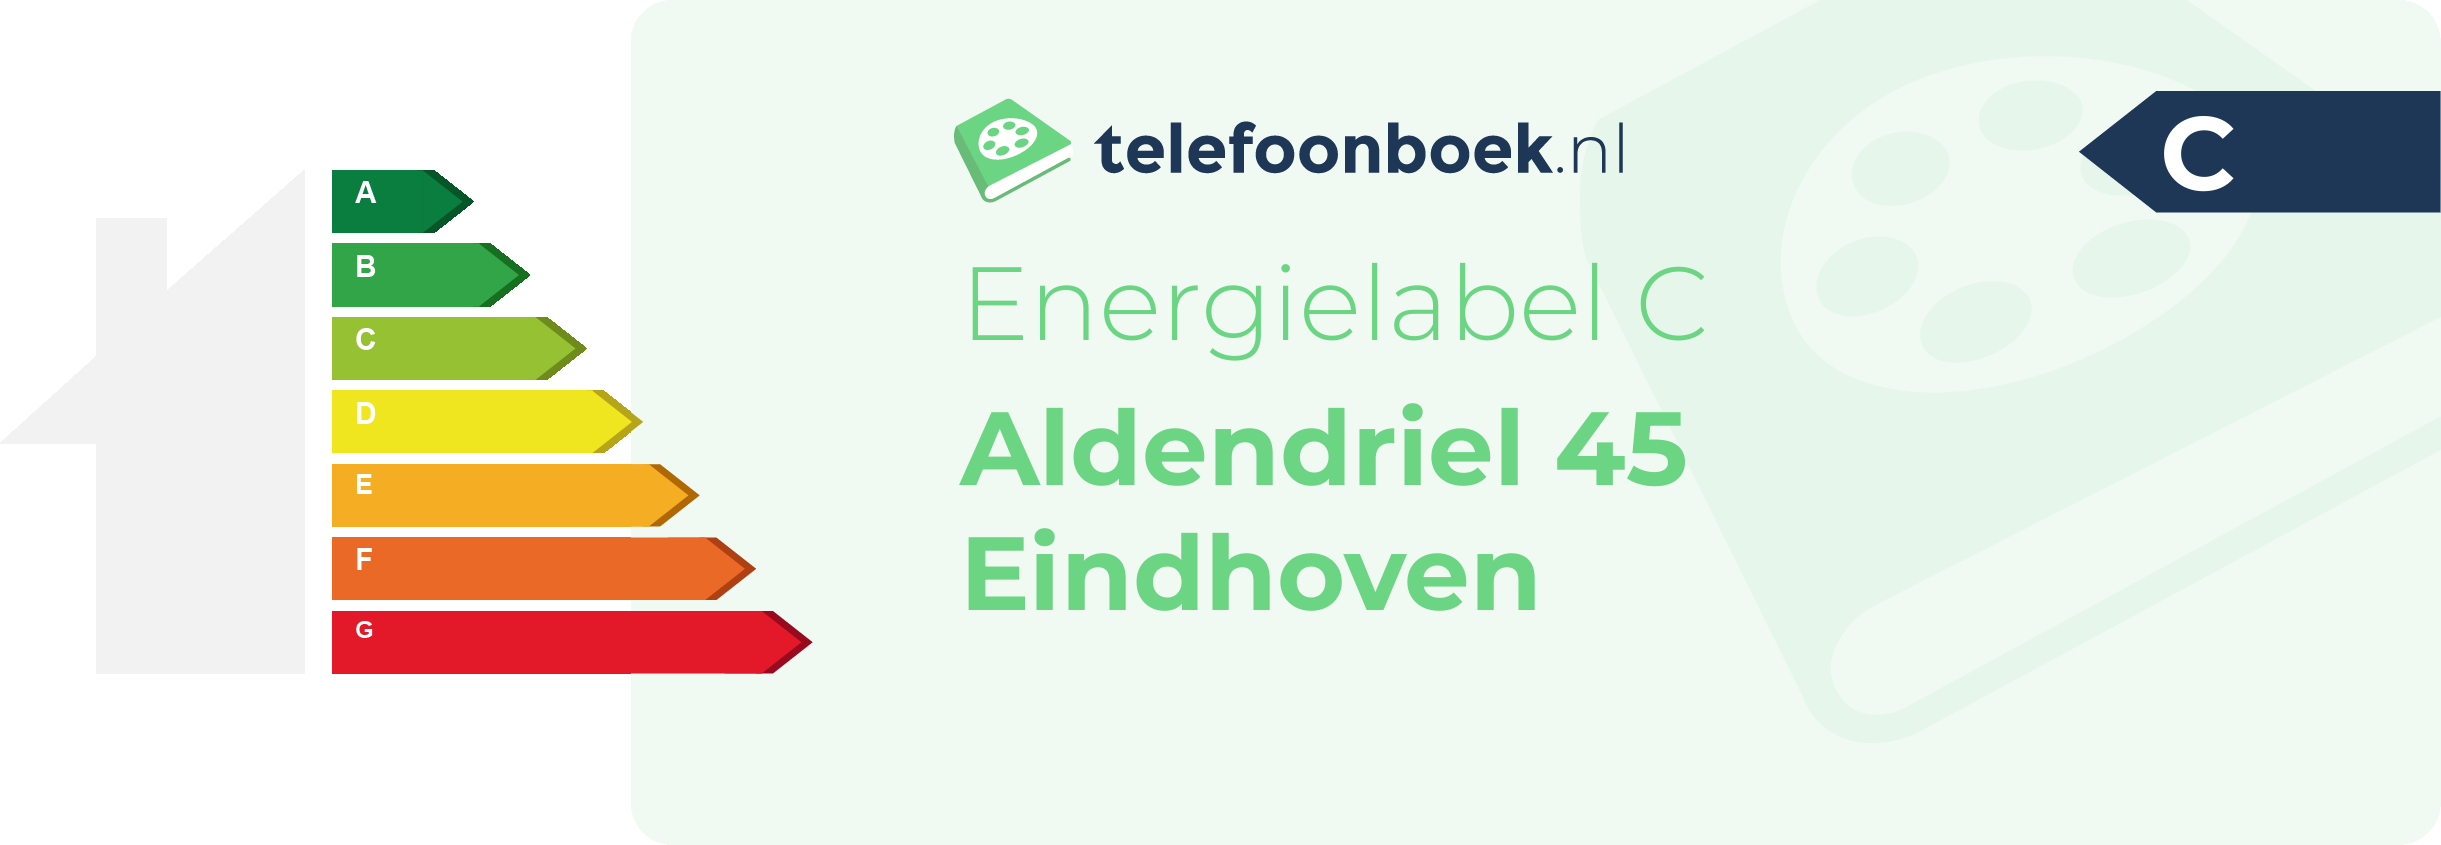 Energielabel Aldendriel 45 Eindhoven